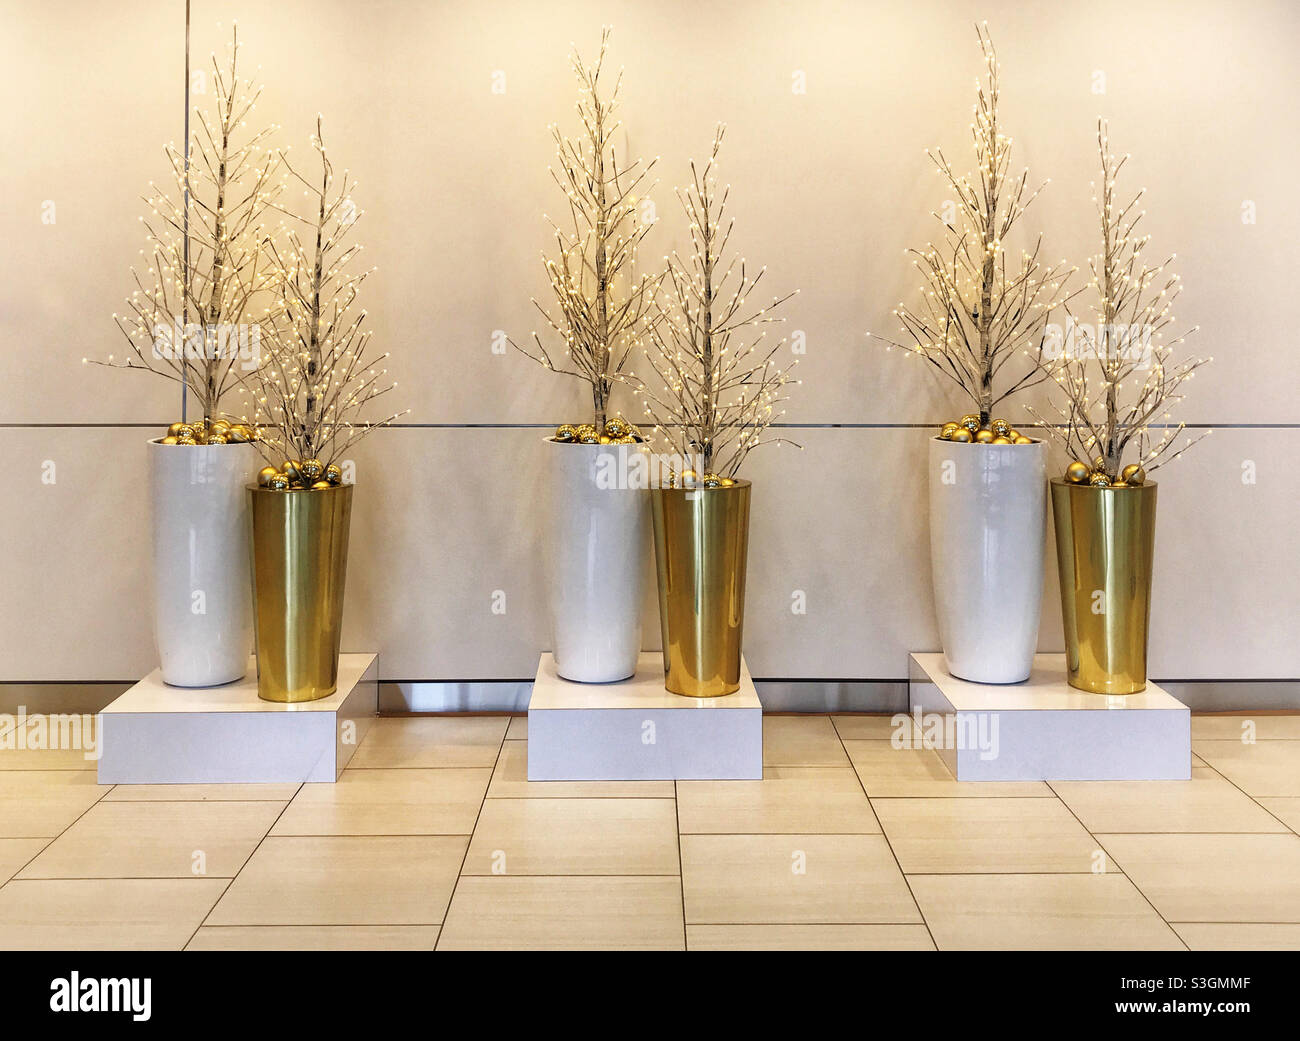 Arbres de Noël dorés illuminés dans des pots blancs et dorés. Centre-ville de Calgary, Alberta, Canada. Banque D'Images